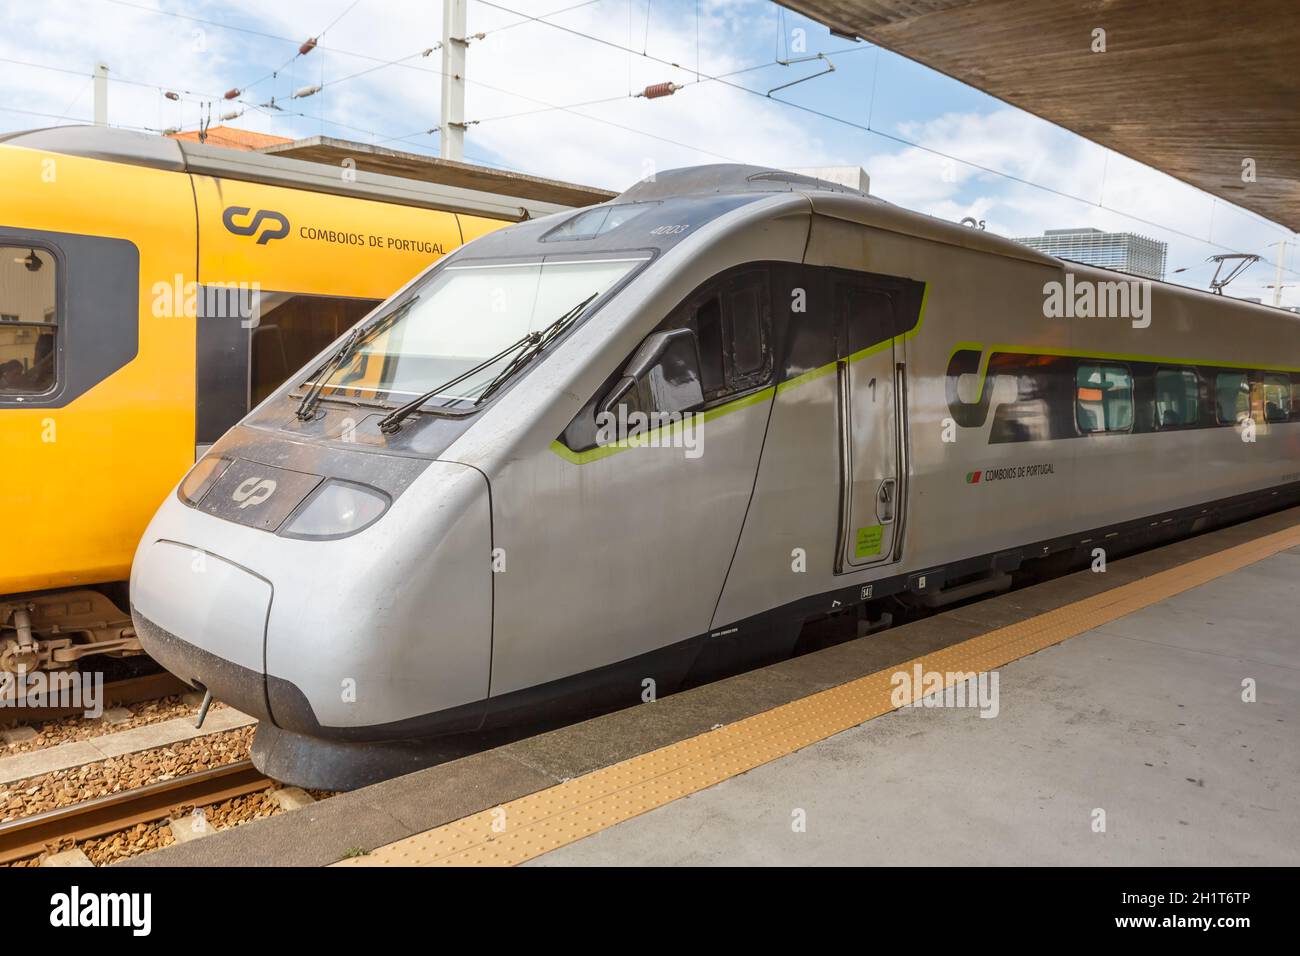 Porto, Portogallo - 23 settembre 2021: Treno ad alta velocità pendolare Alfa alla stazione ferroviaria di Porto Campanha trasporto pubblico transito in Portogallo. Foto Stock